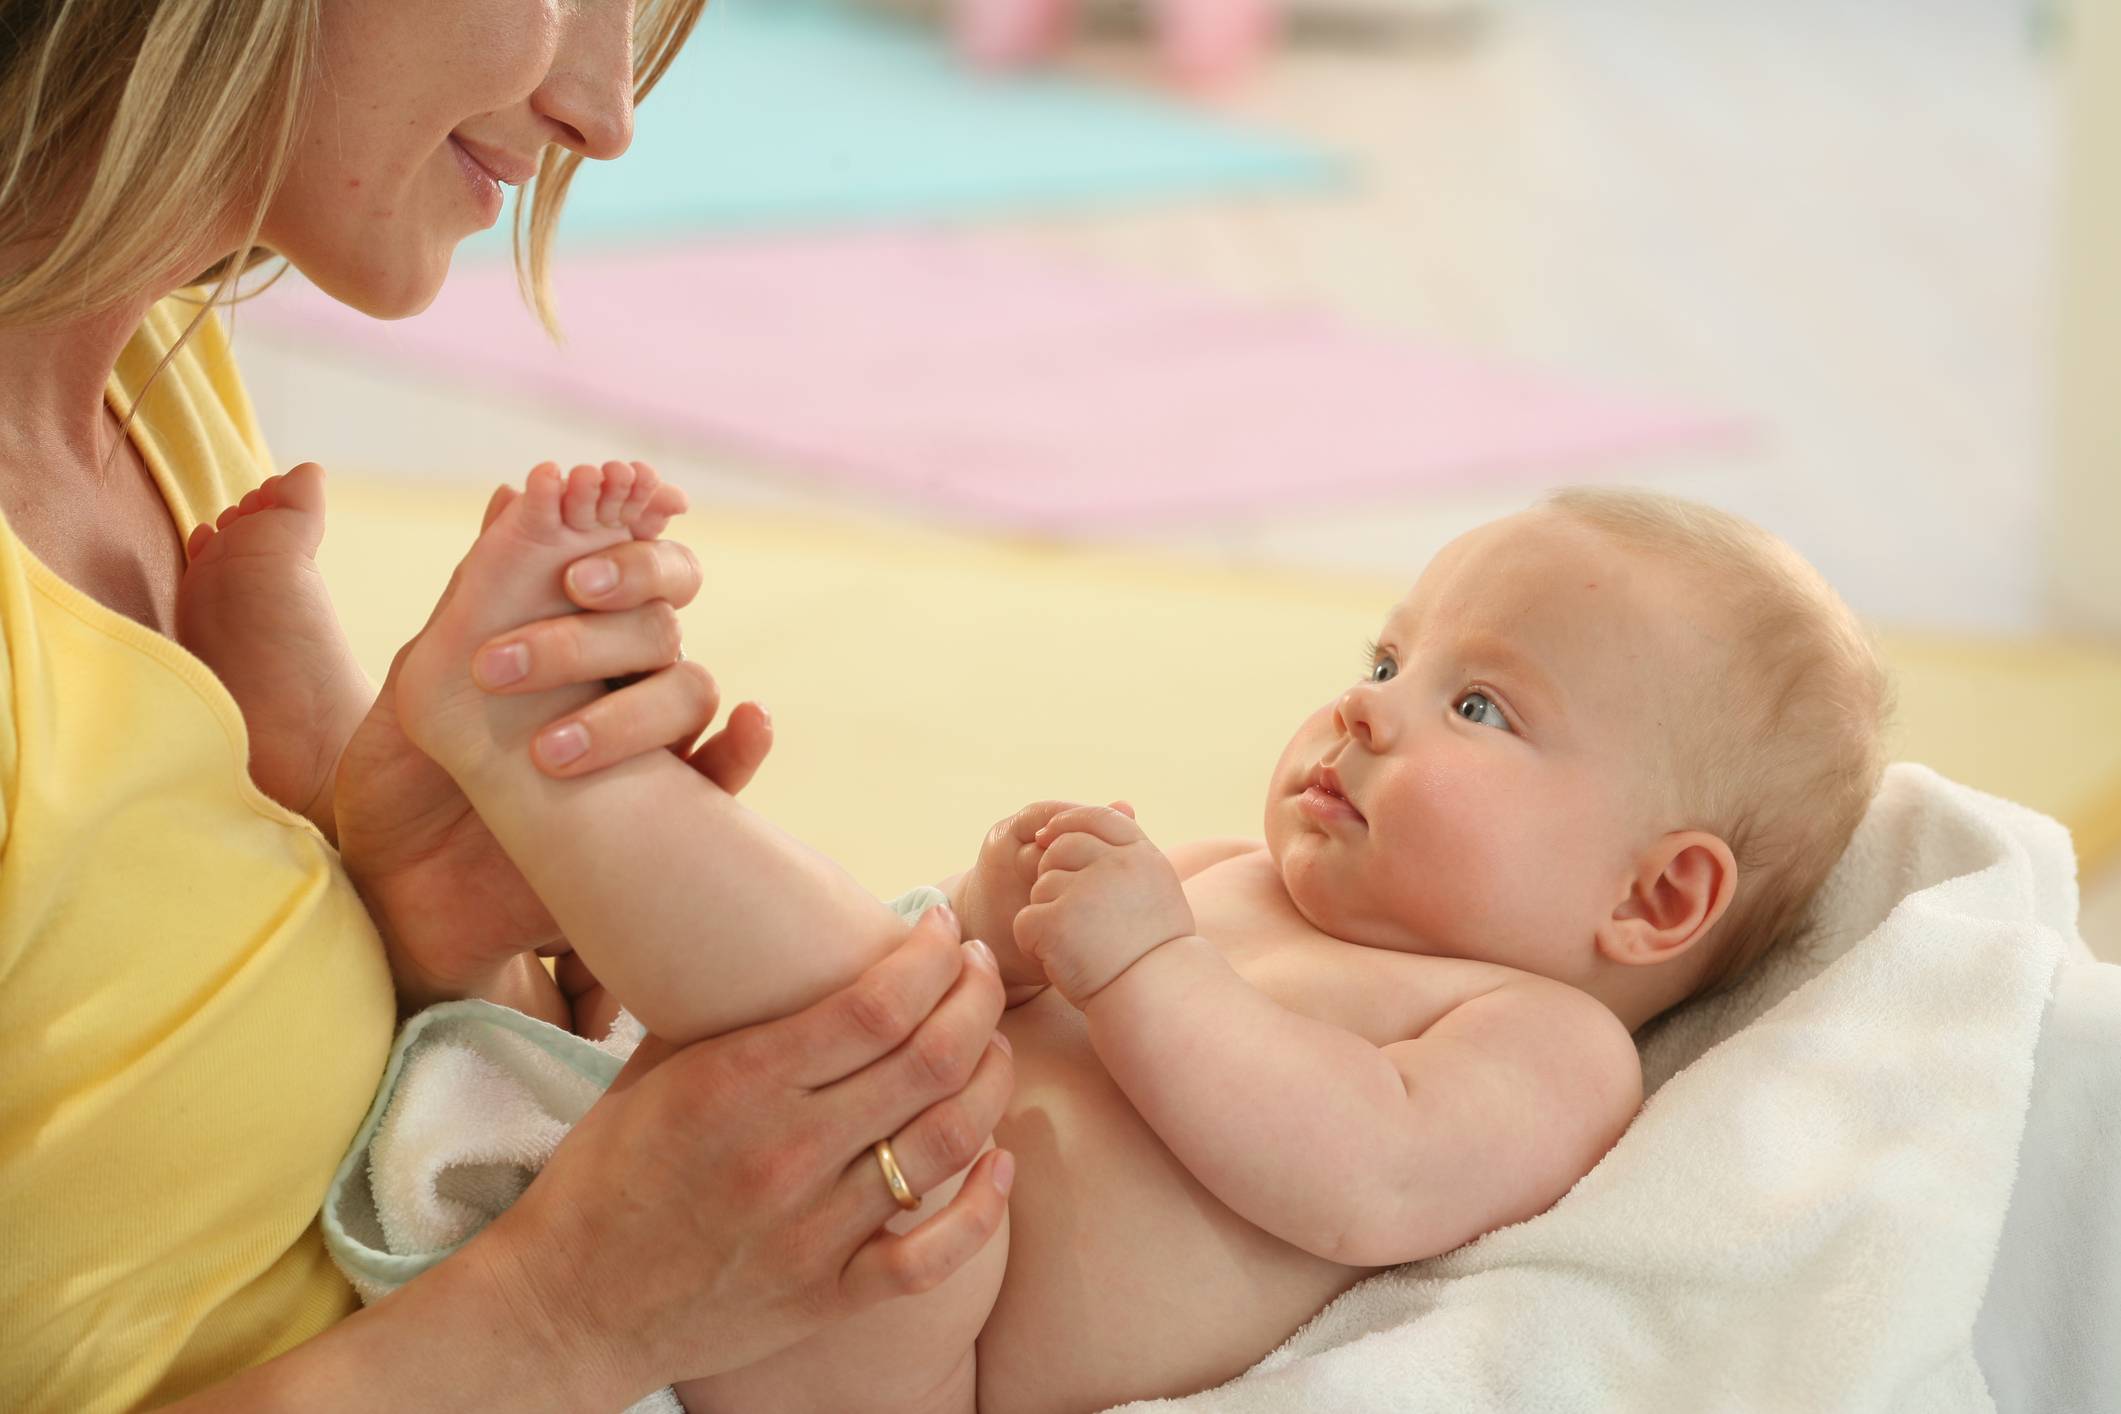 Как делать массаж животика от коликов у новорождённого?